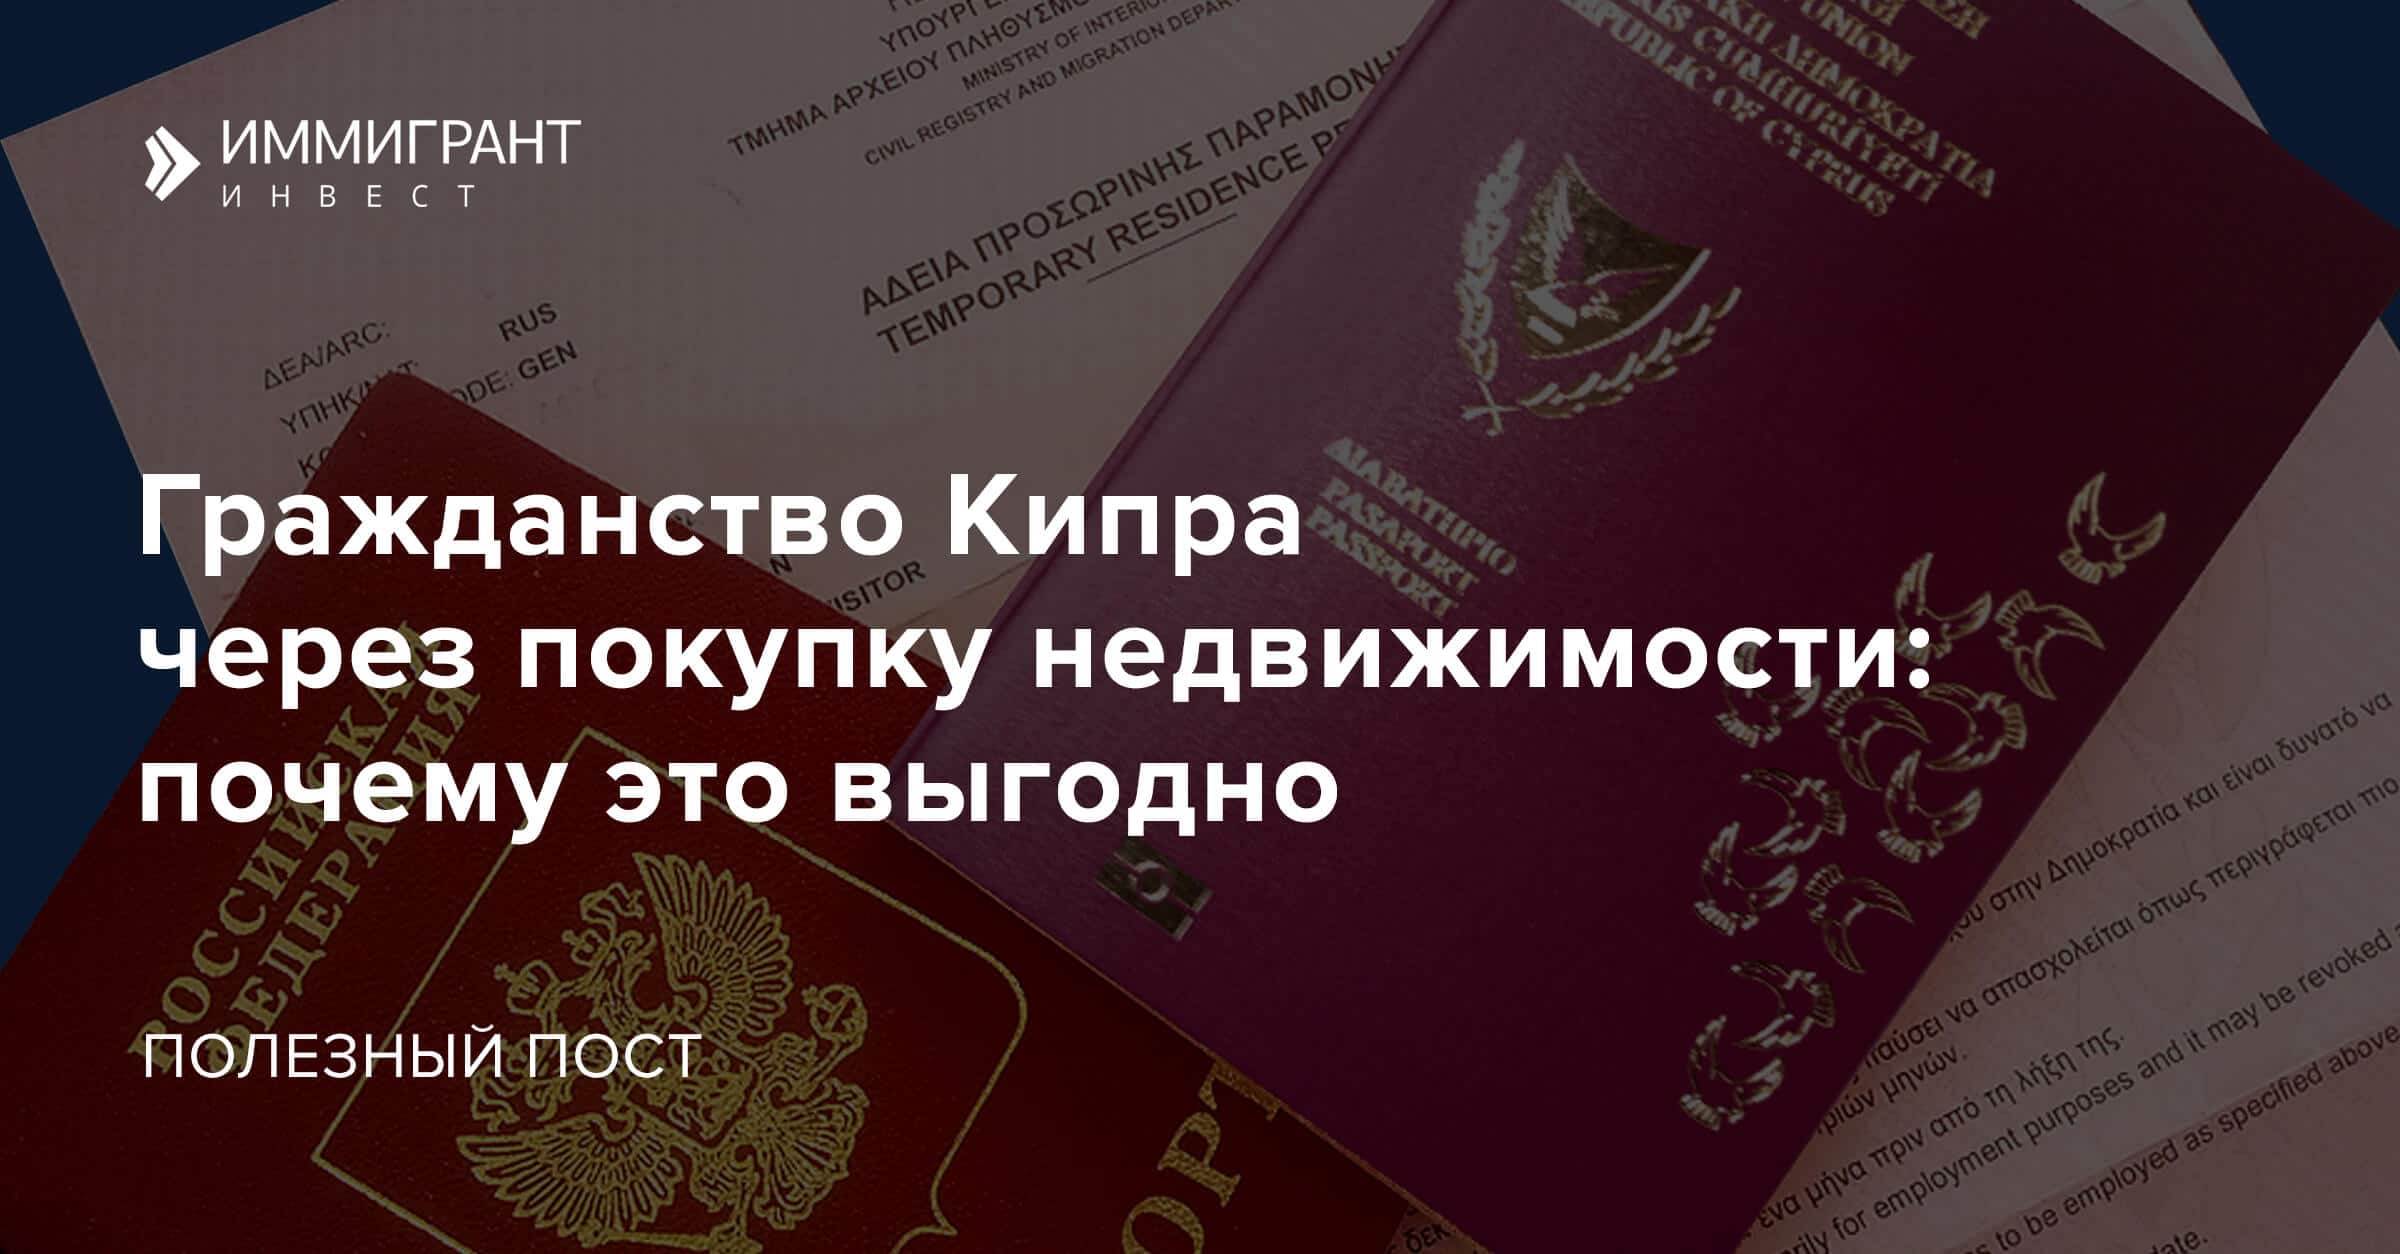 Как получить гражданство черногории гражданину россии: при покупке недвижимости и другие способы